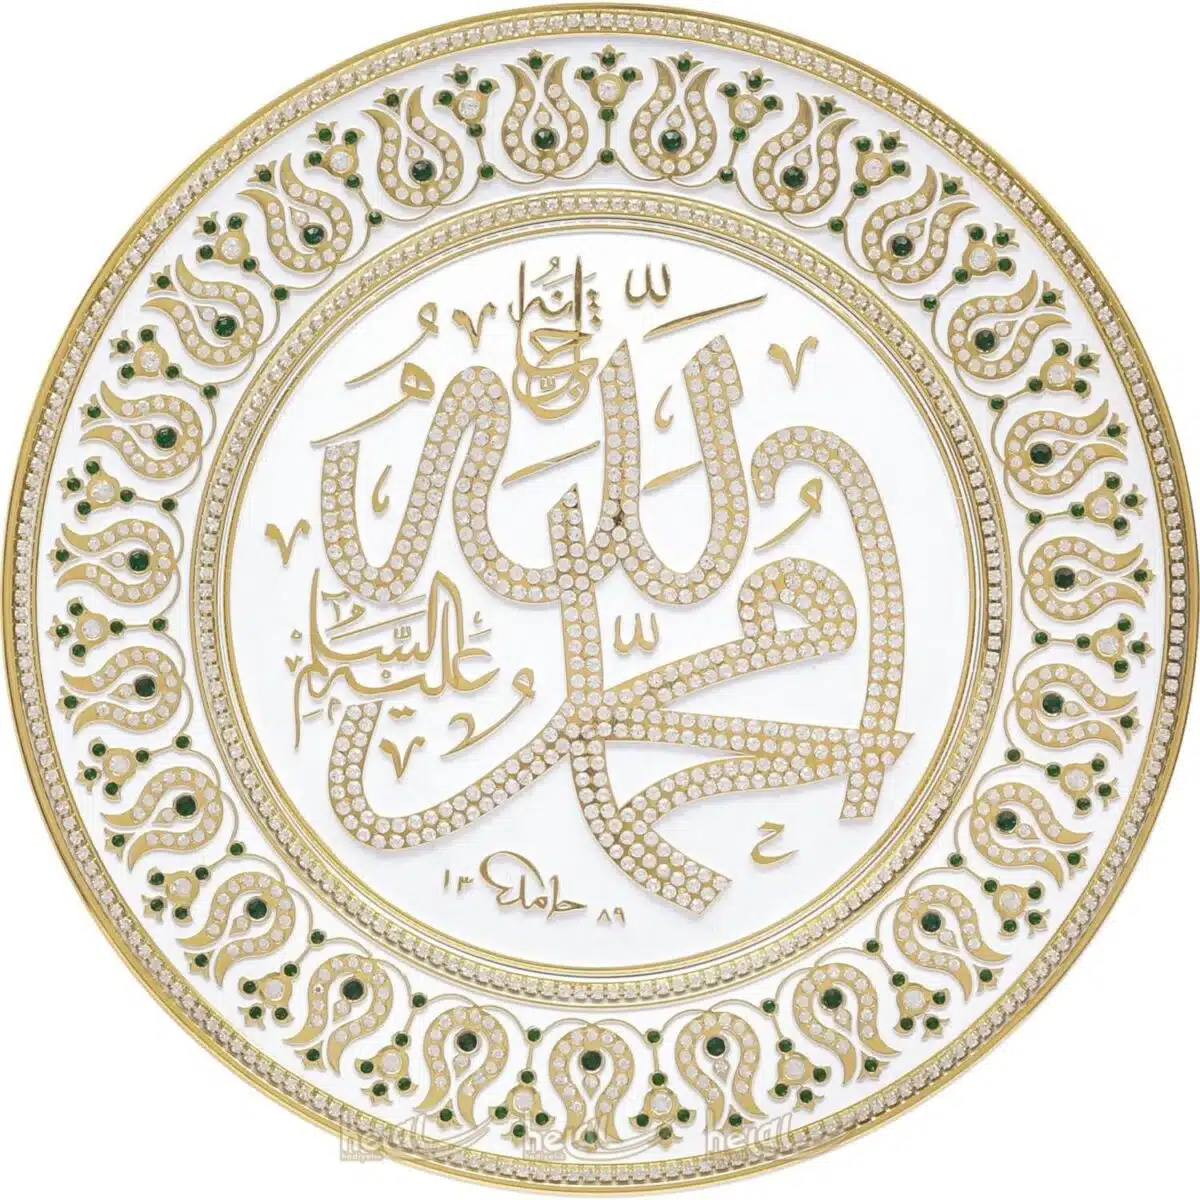 33cm Kristal Çok Taşlı Allah cc.ve Muhammed sav. Lafzı Yazılı Tabak Masa Üstü ve Duvar Süsü Ayetli Ürünler